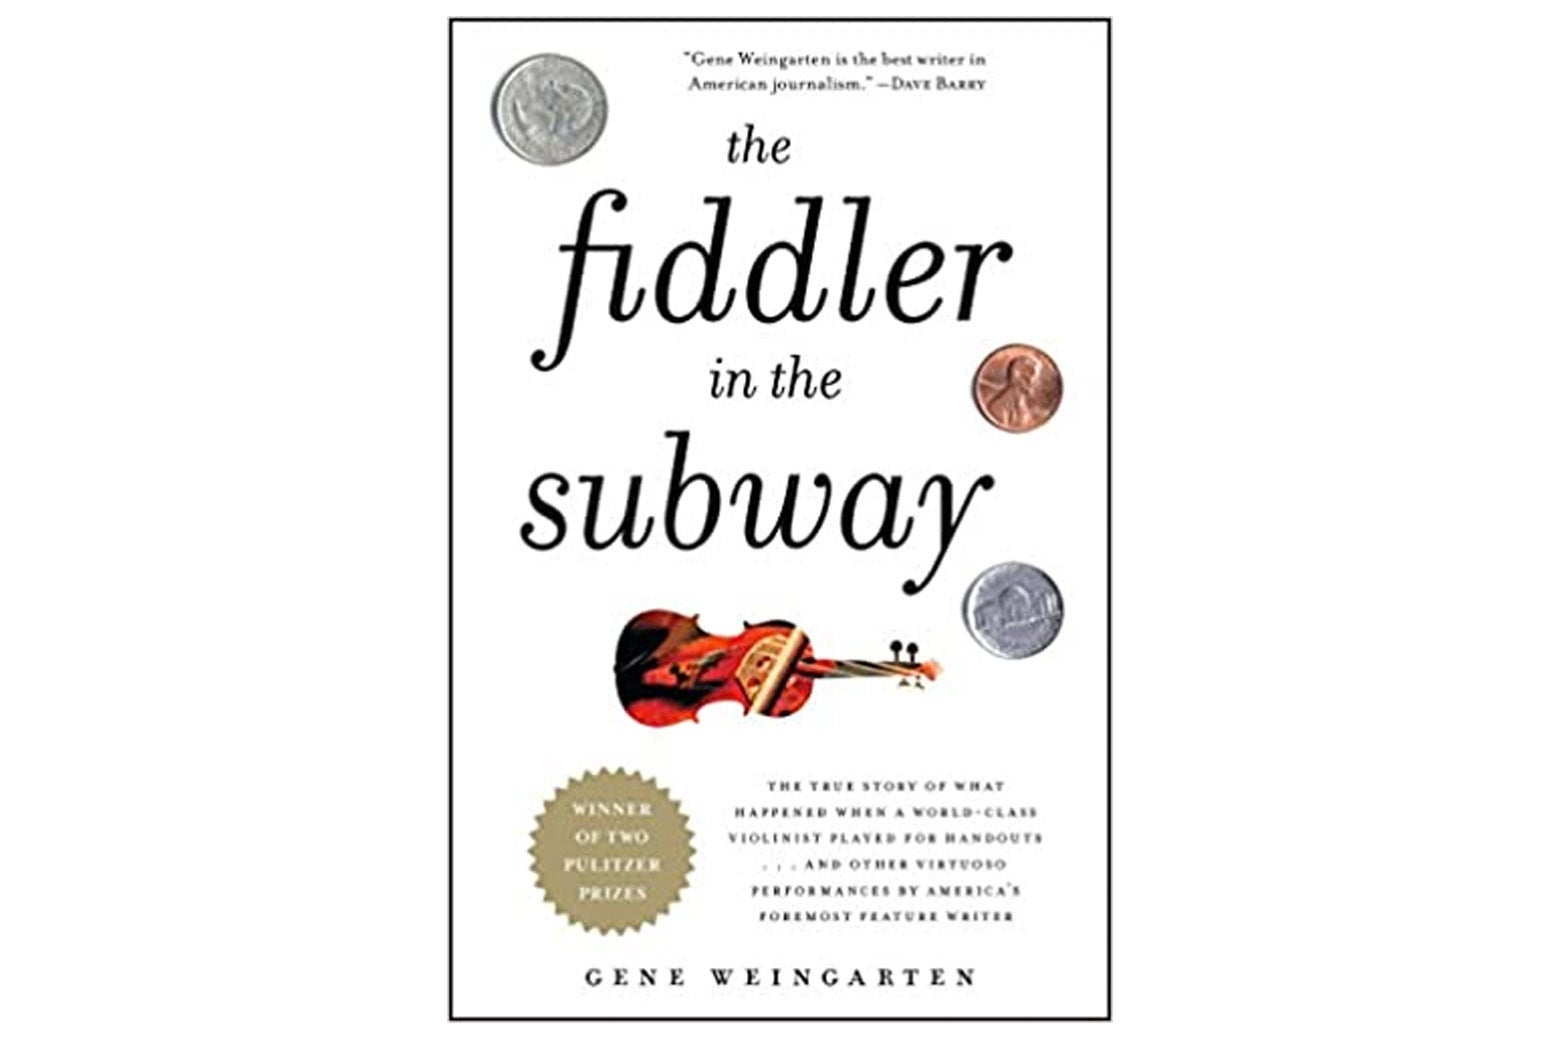 The Fiddler in the Subway by Gene Weingarten